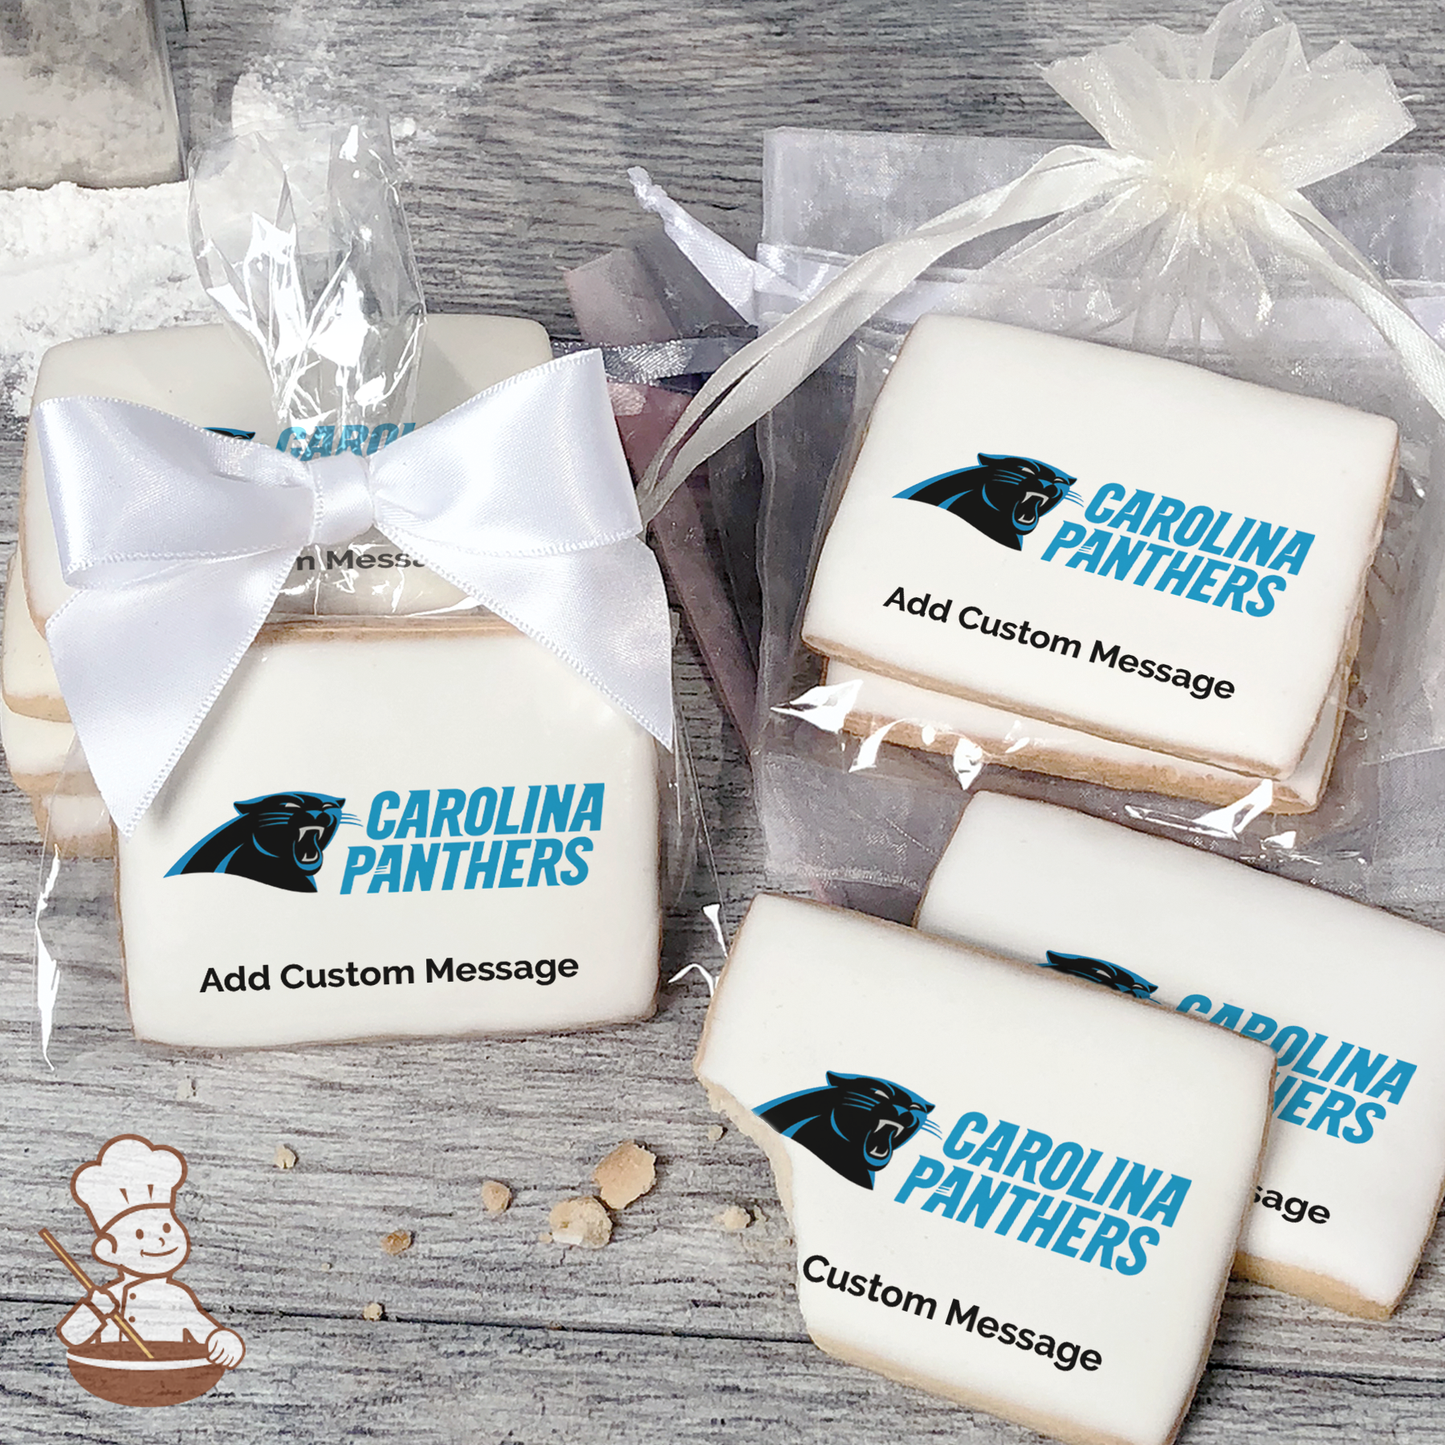 NFL Carolina Panthers Custom Message Cookies (Rectangle)